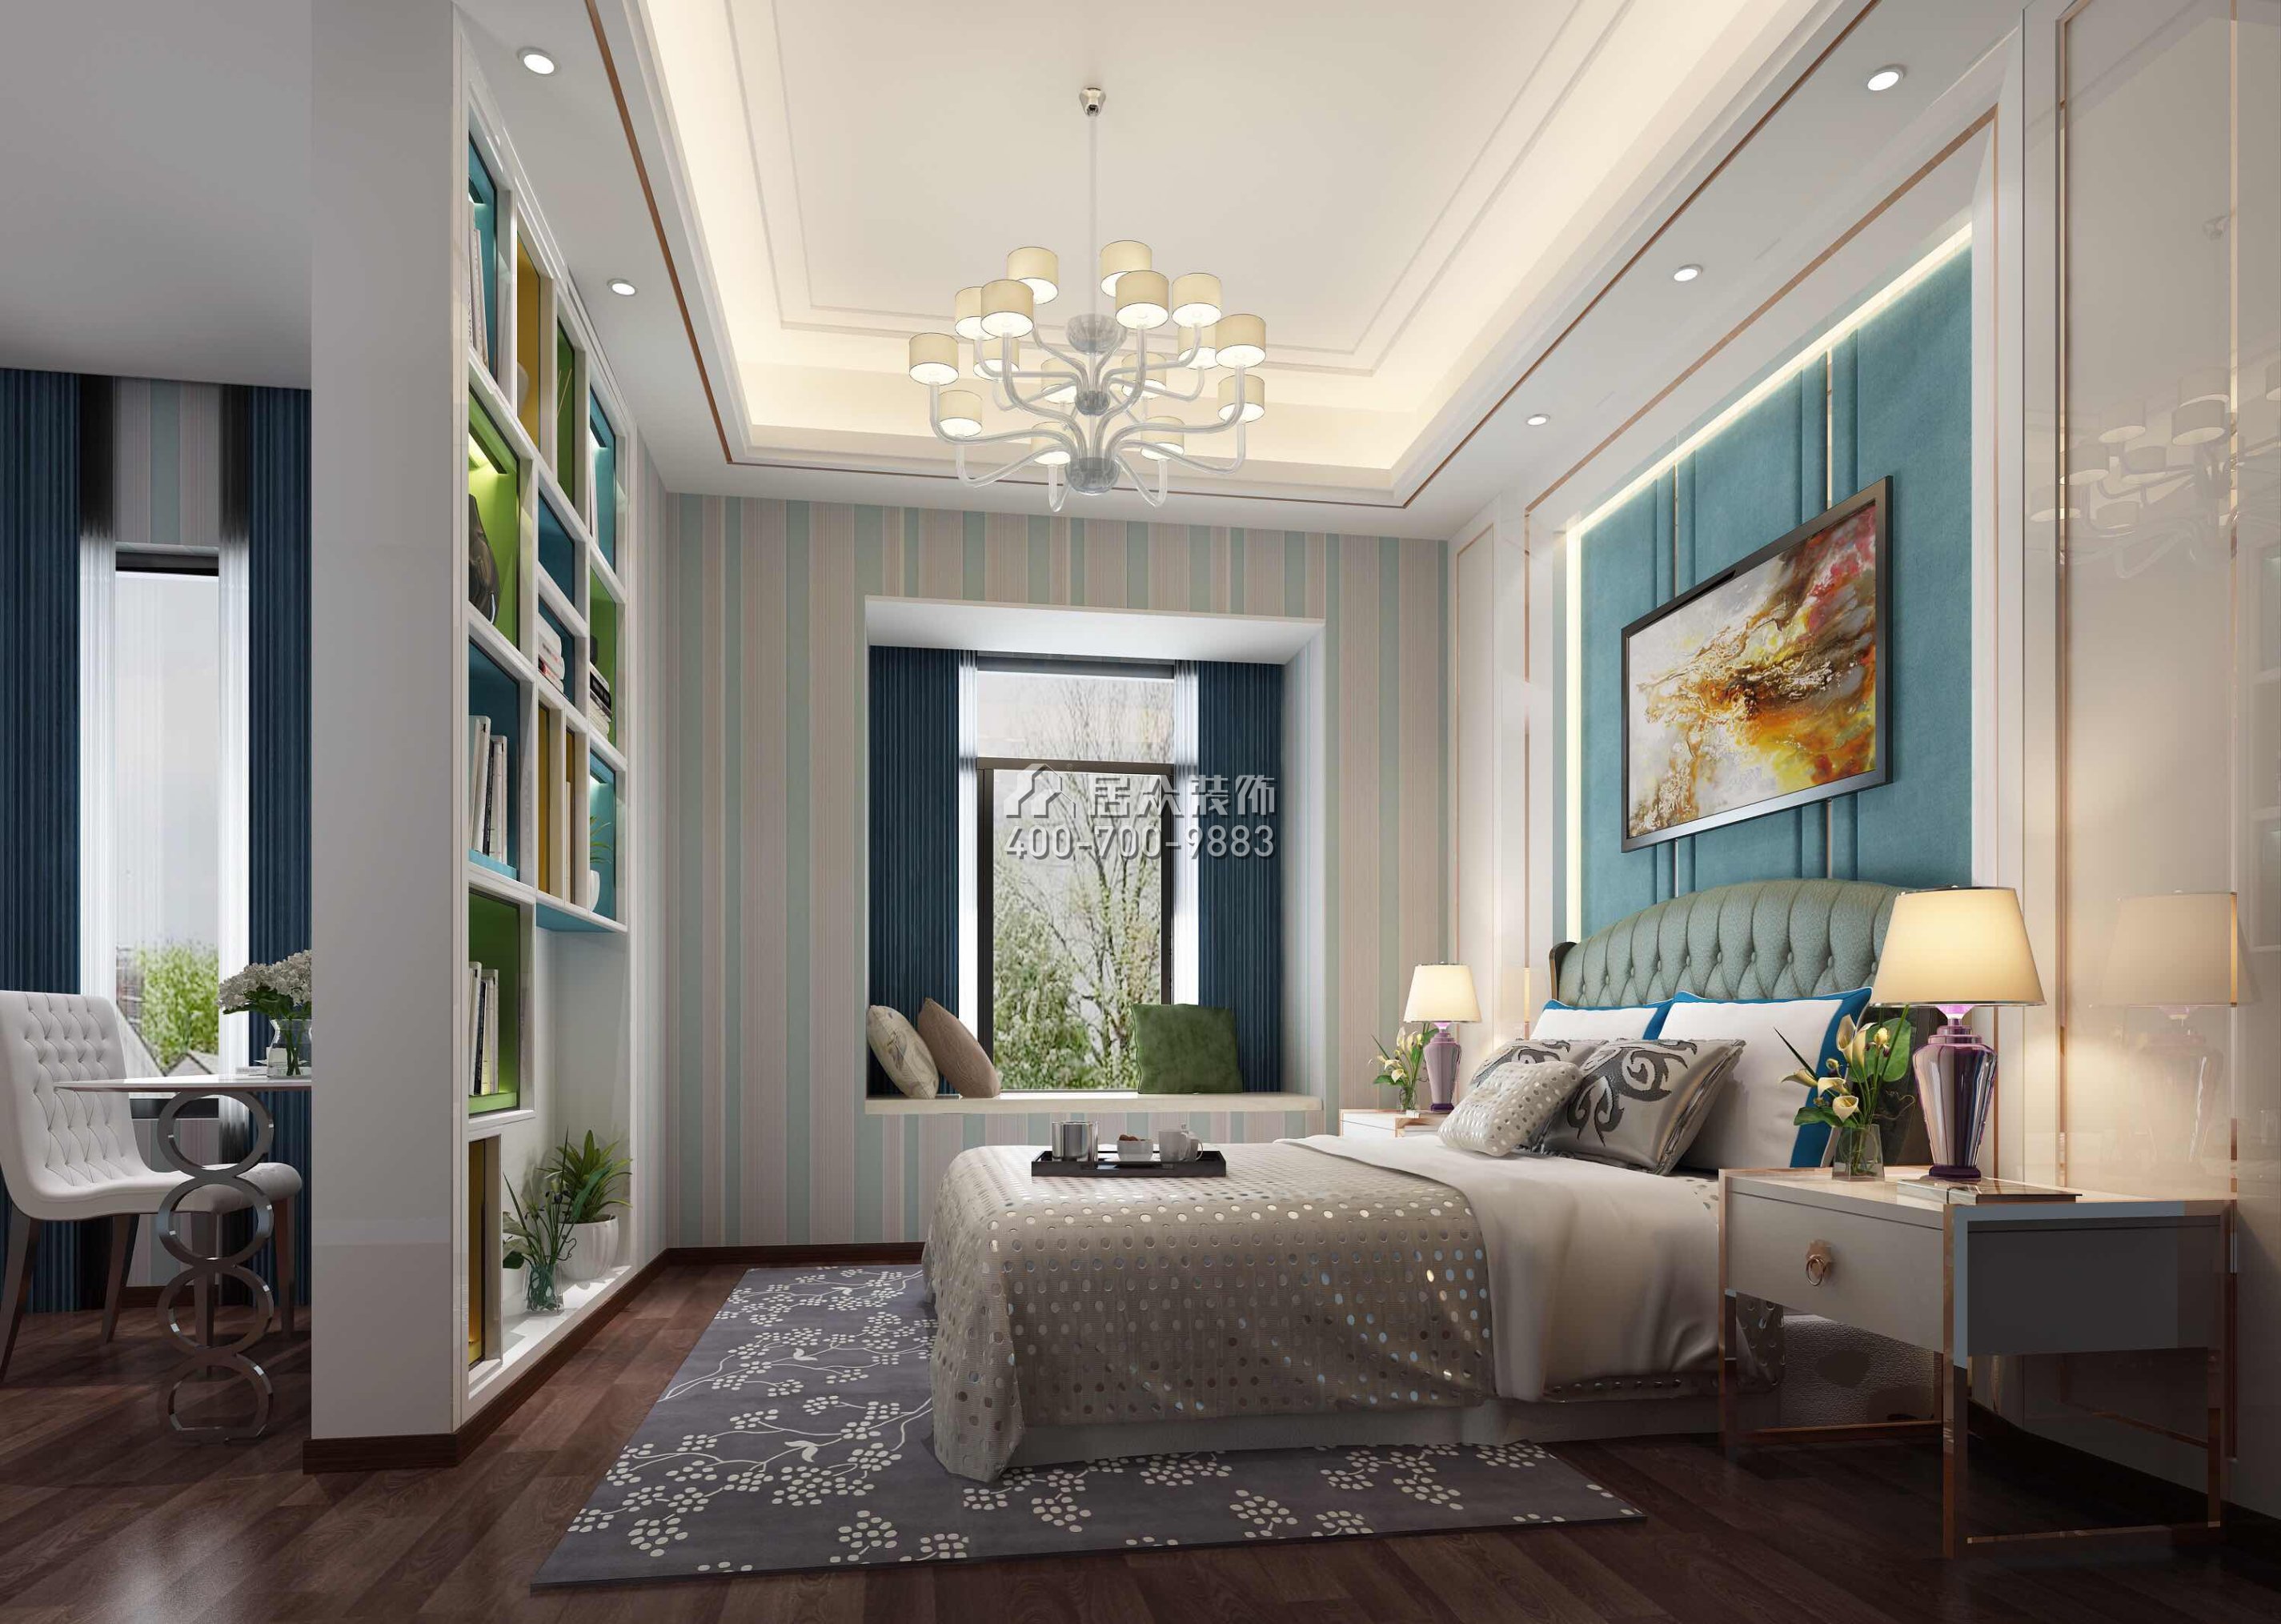 海御豪庭御峰500平方米现代简约风格别墅户型卧室装修效果图